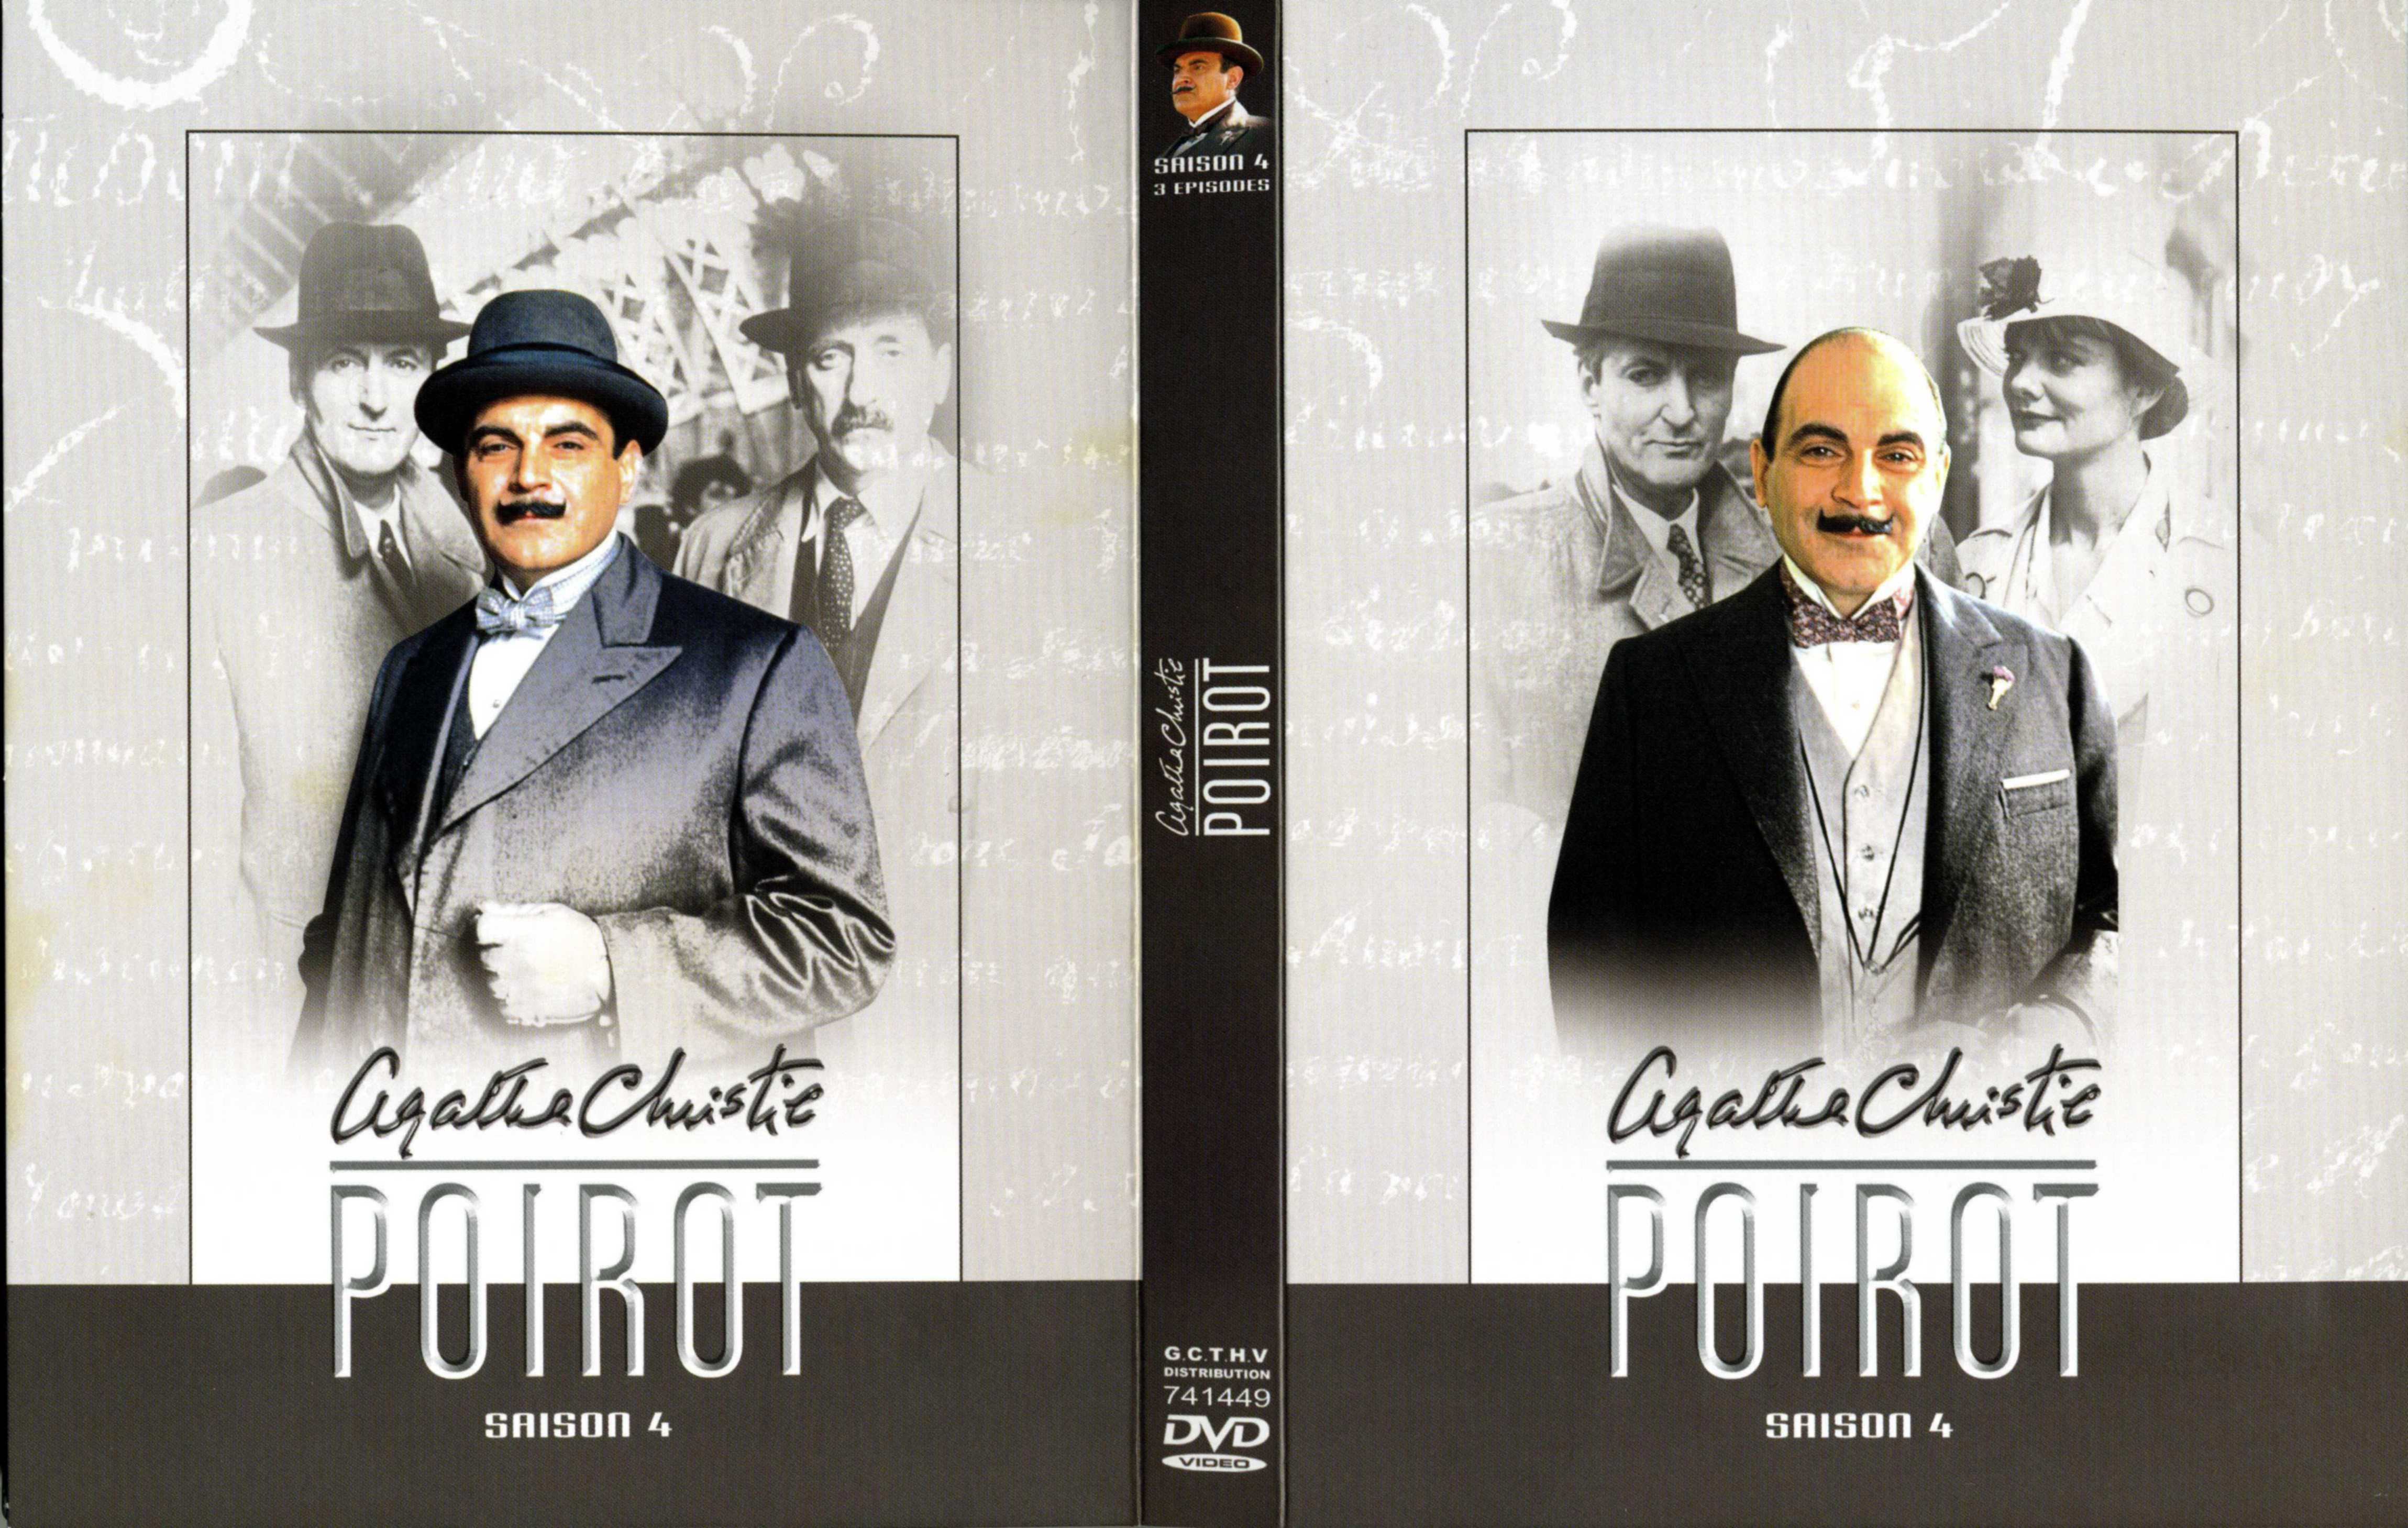 Jaquette DVD Hercule Poirot Saison 04 COFFRET